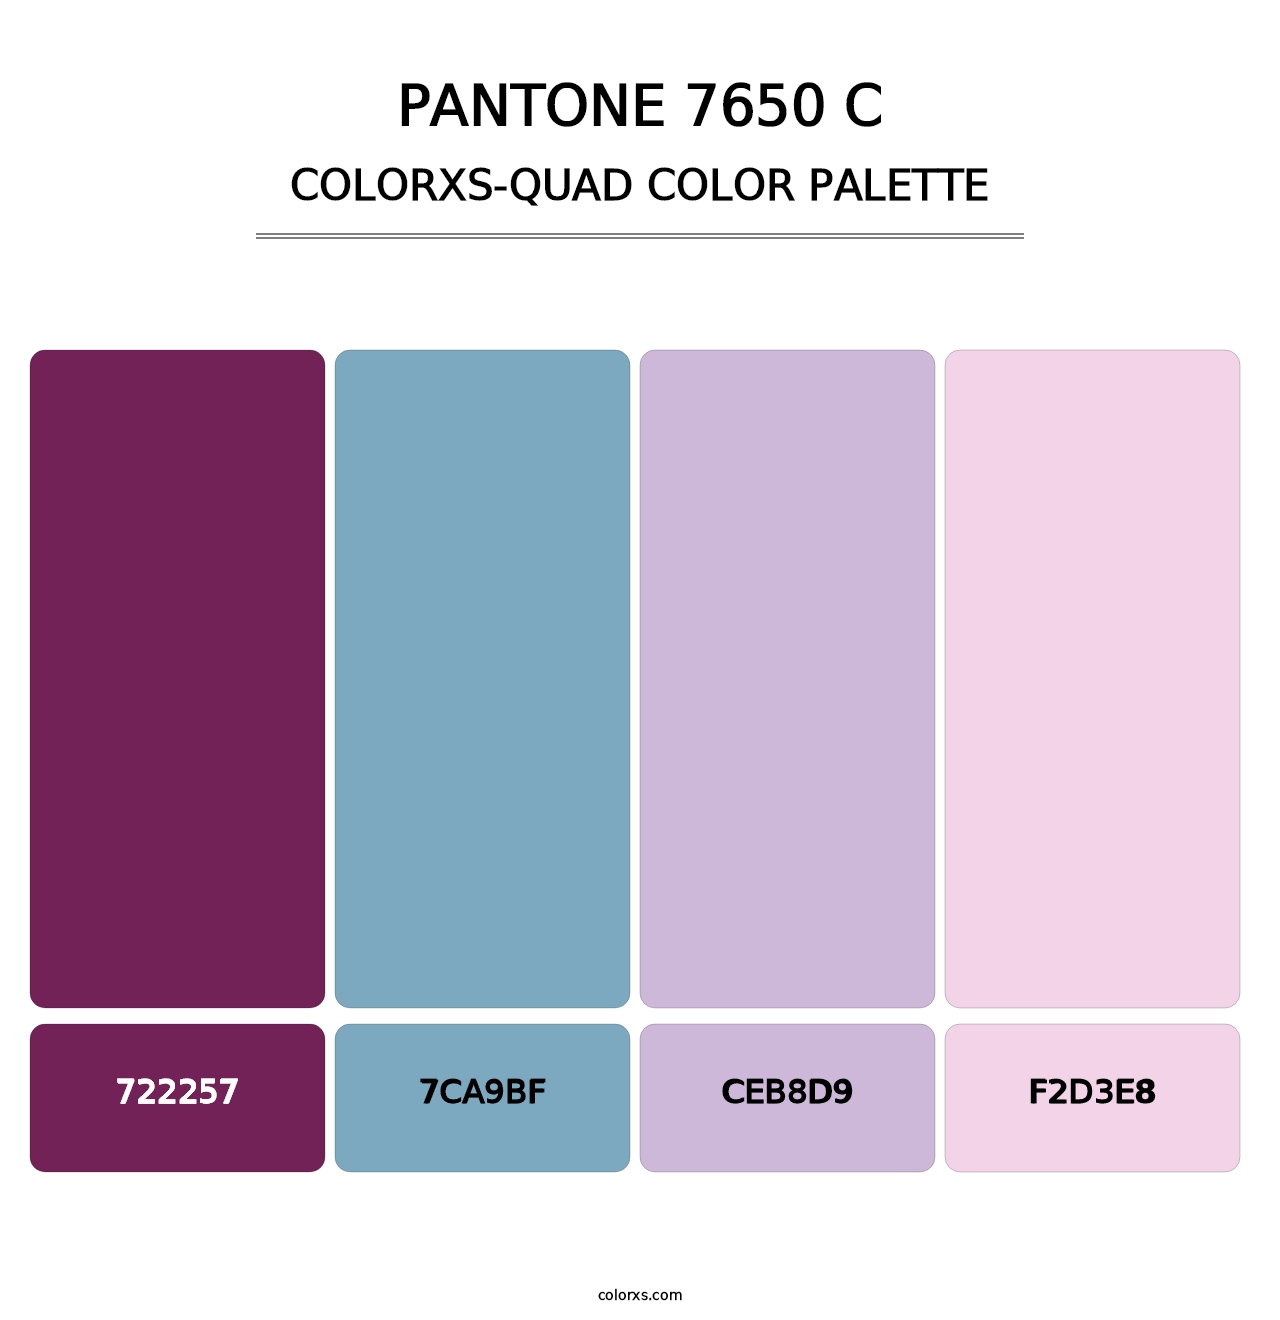 PANTONE 7650 C - Colorxs Quad Palette